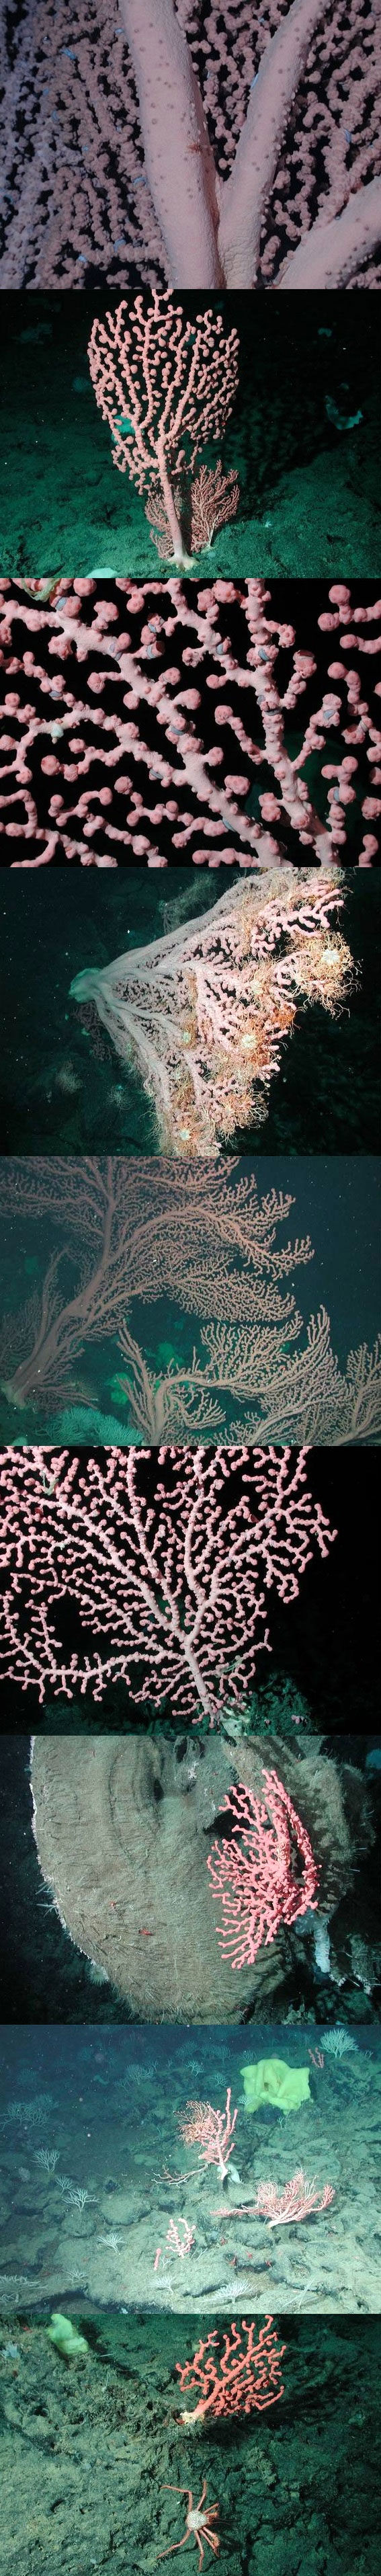 تصاویری از یک مرجان دریایی منحصربفرد